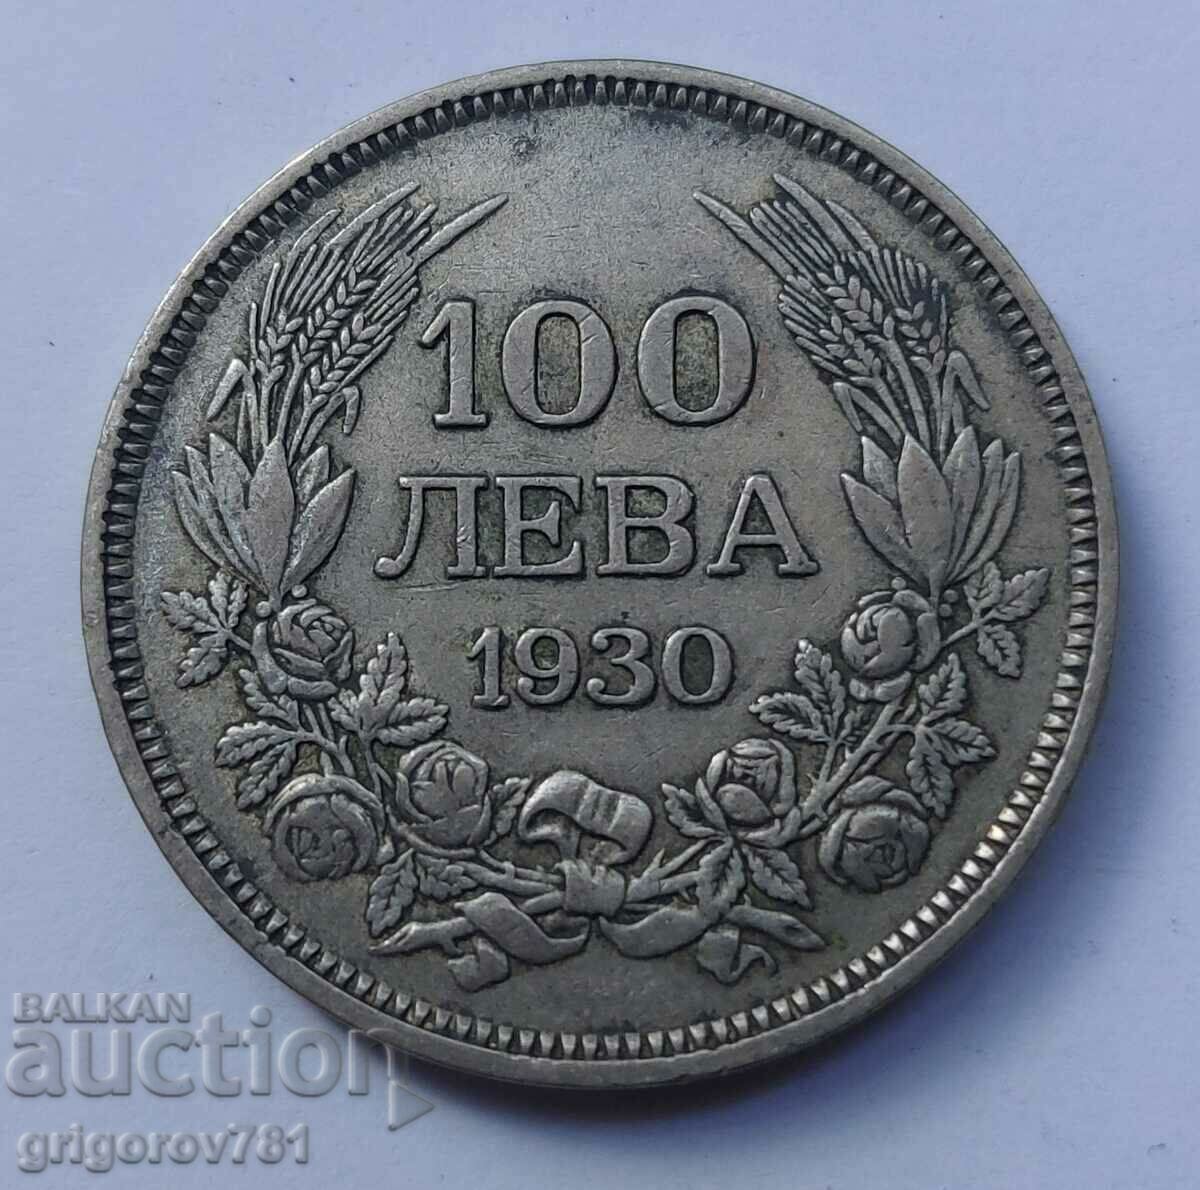 Ασήμι 100 λέβα Βουλγαρία 1930 - ασημένιο νόμισμα #22